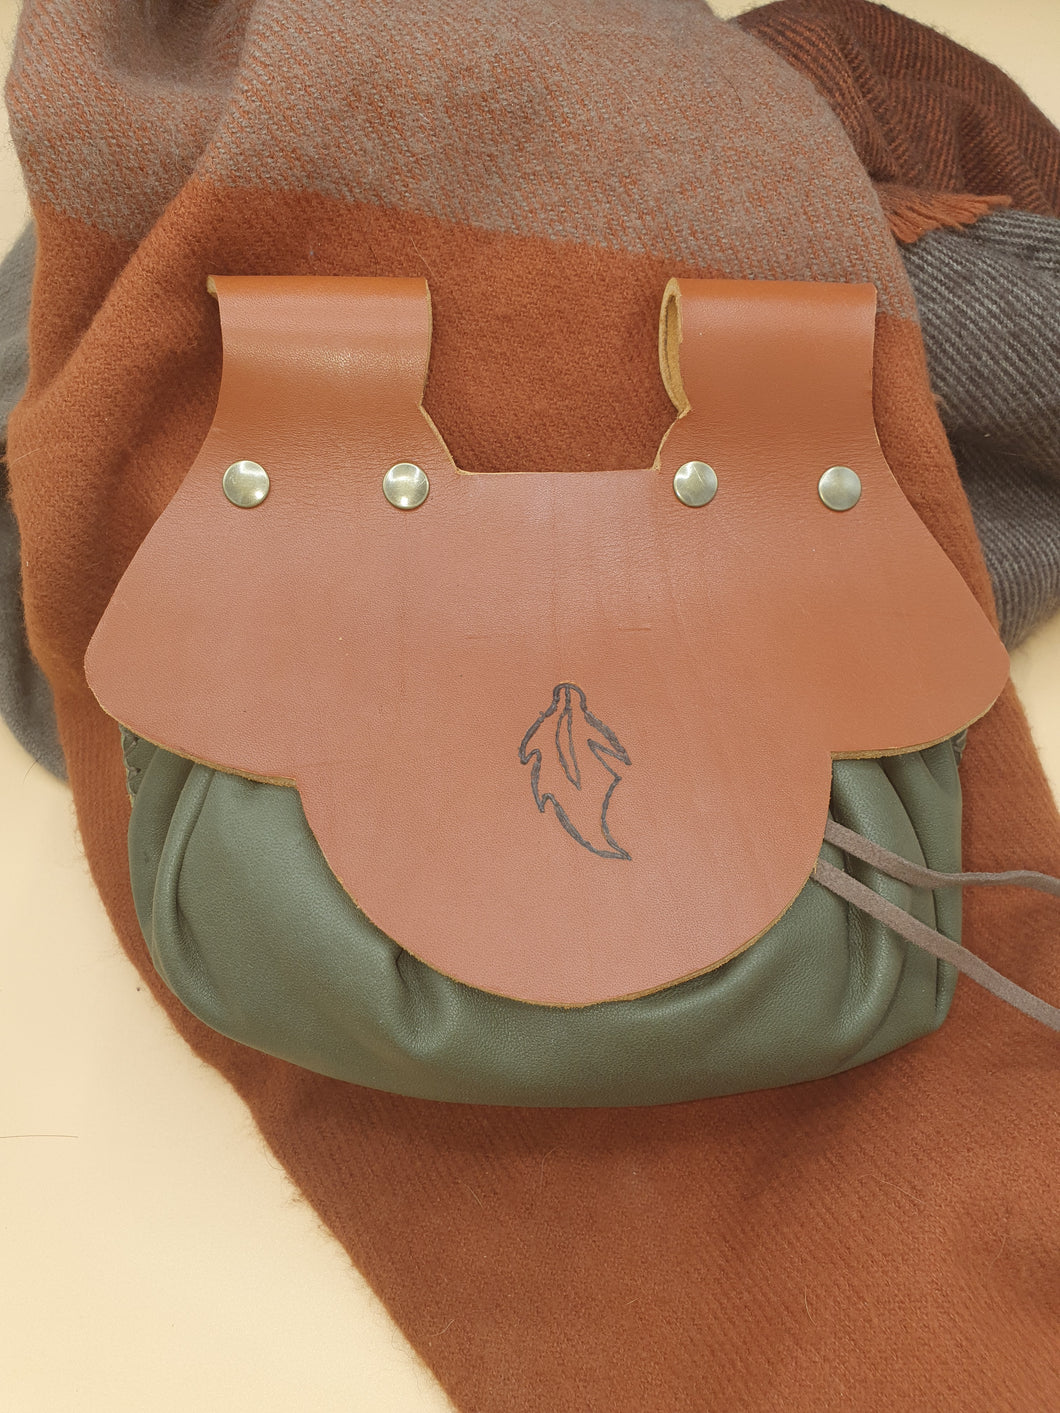 Escarselle ou sac bourse de ceinture artisanale en cuir vert et marron, dessin feuille